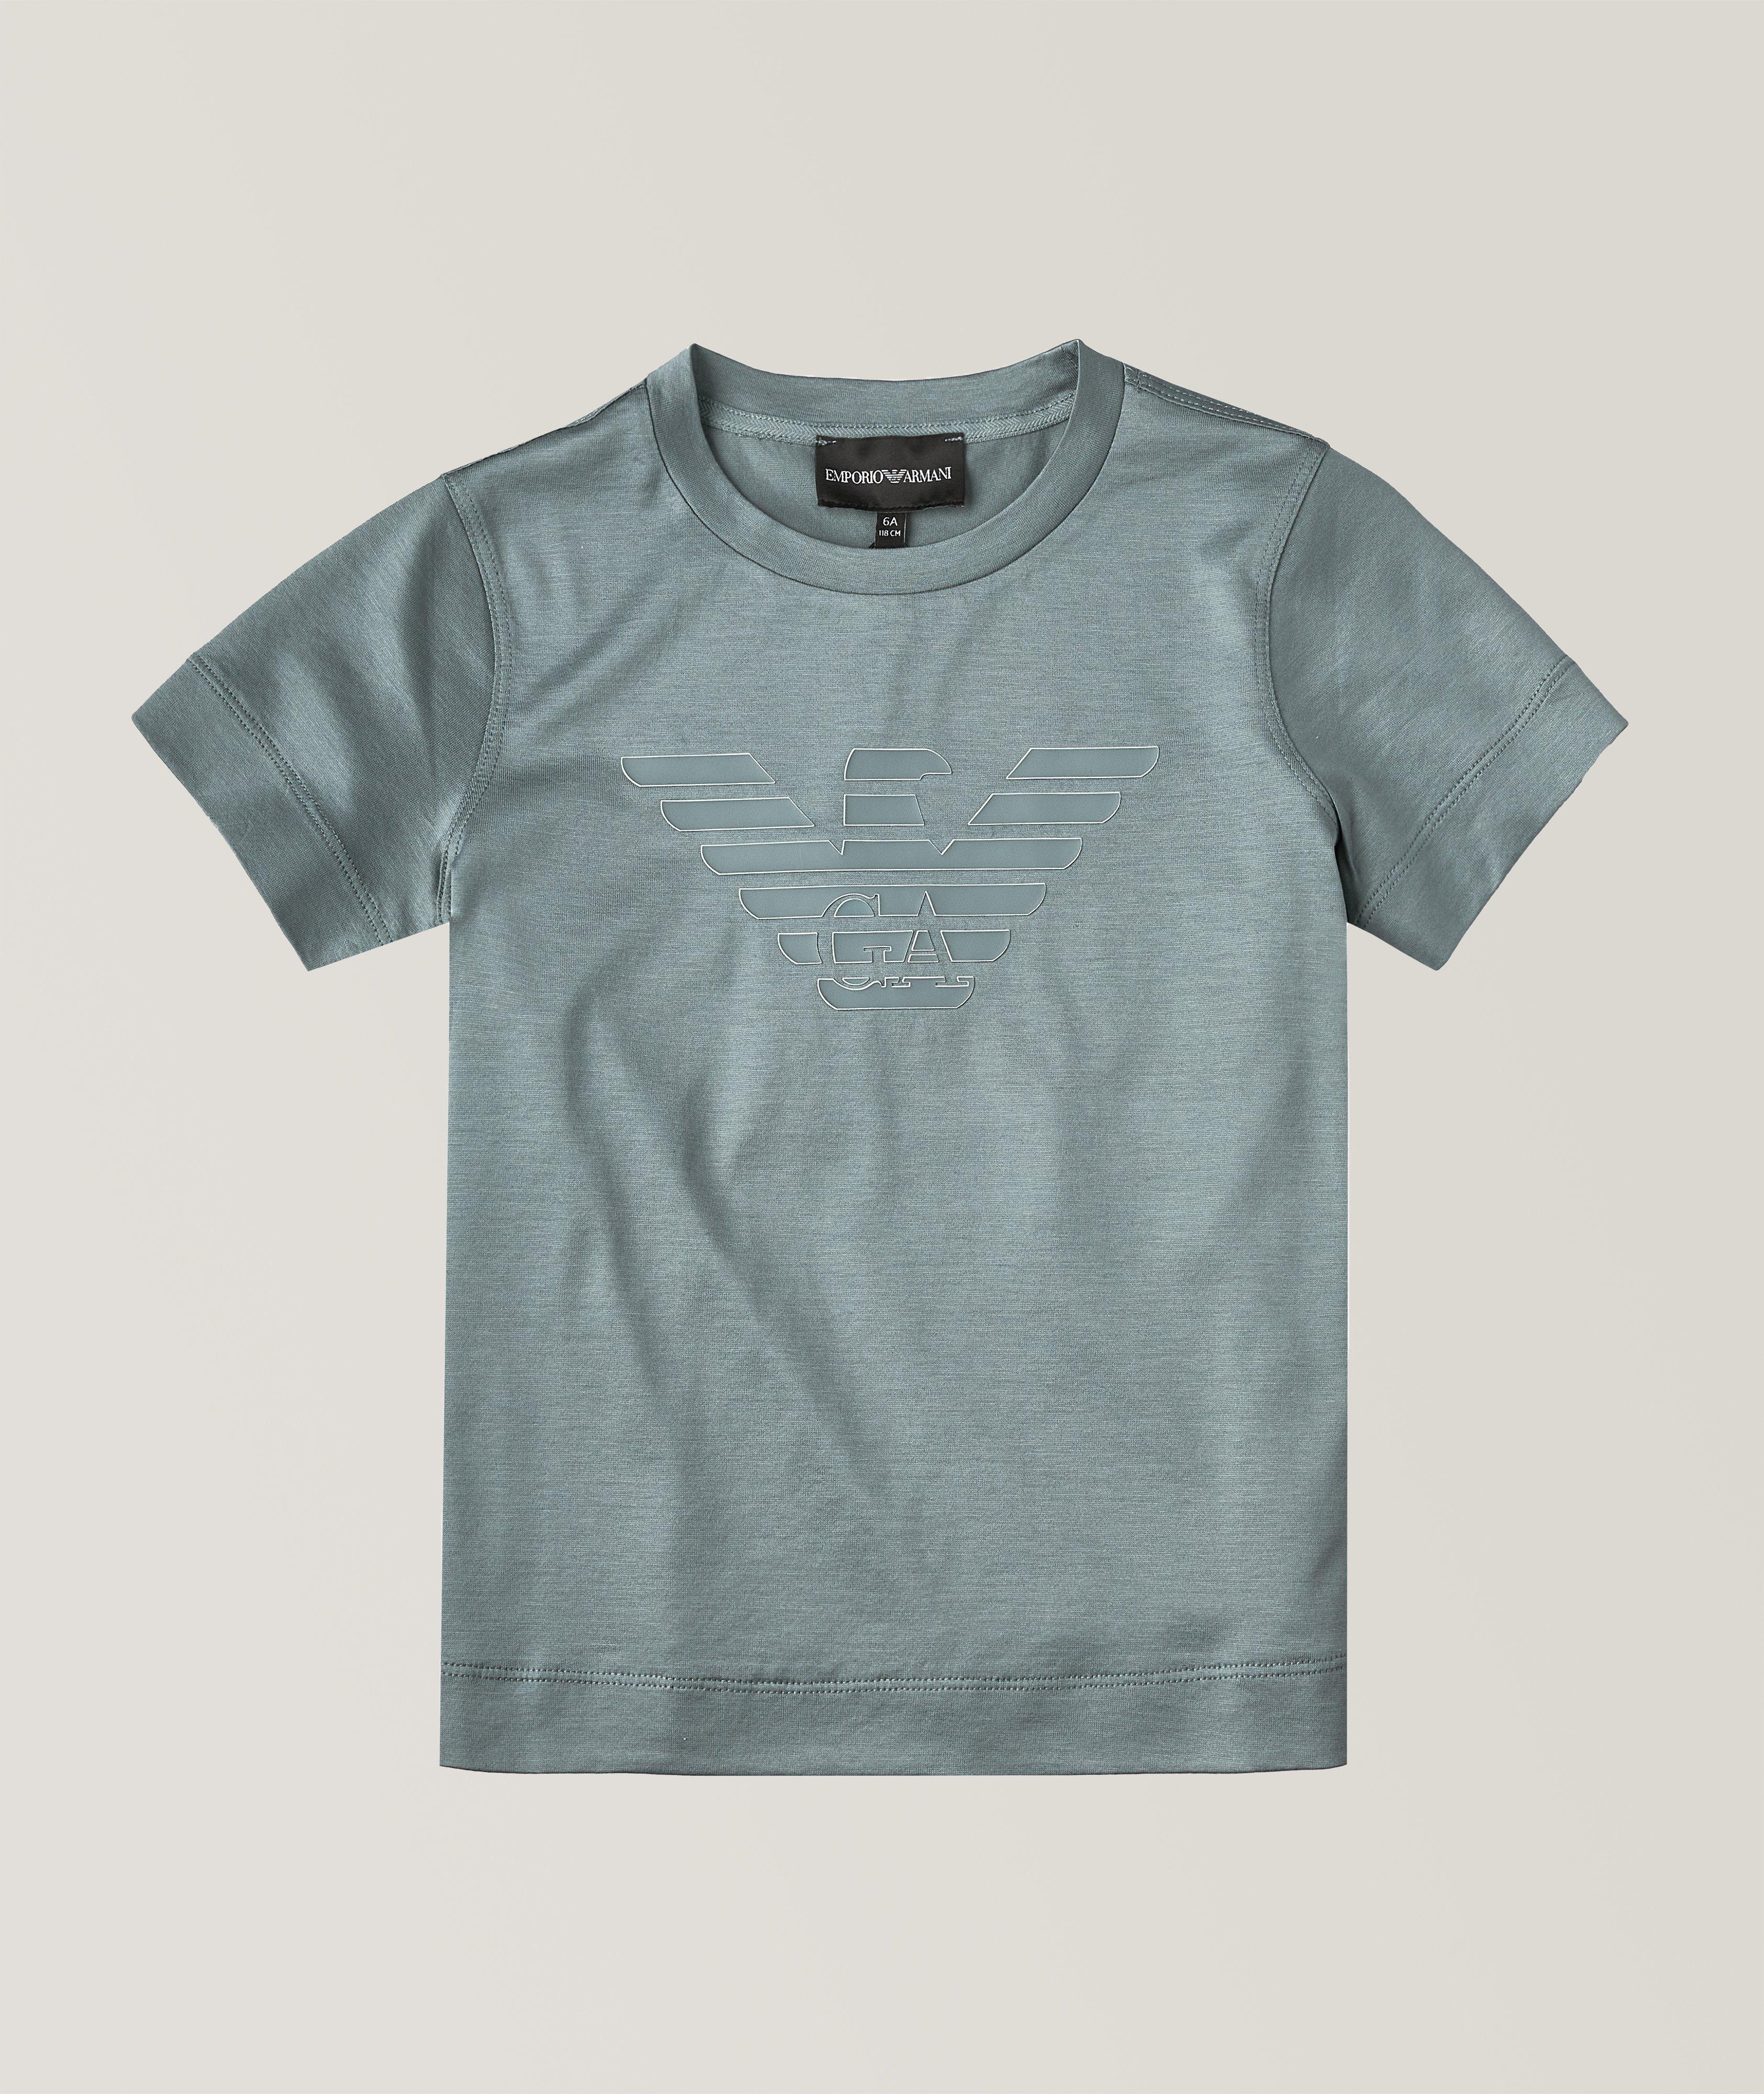 T-shirt en mélange de Tencel pour enfants, collection Mini Me image 0